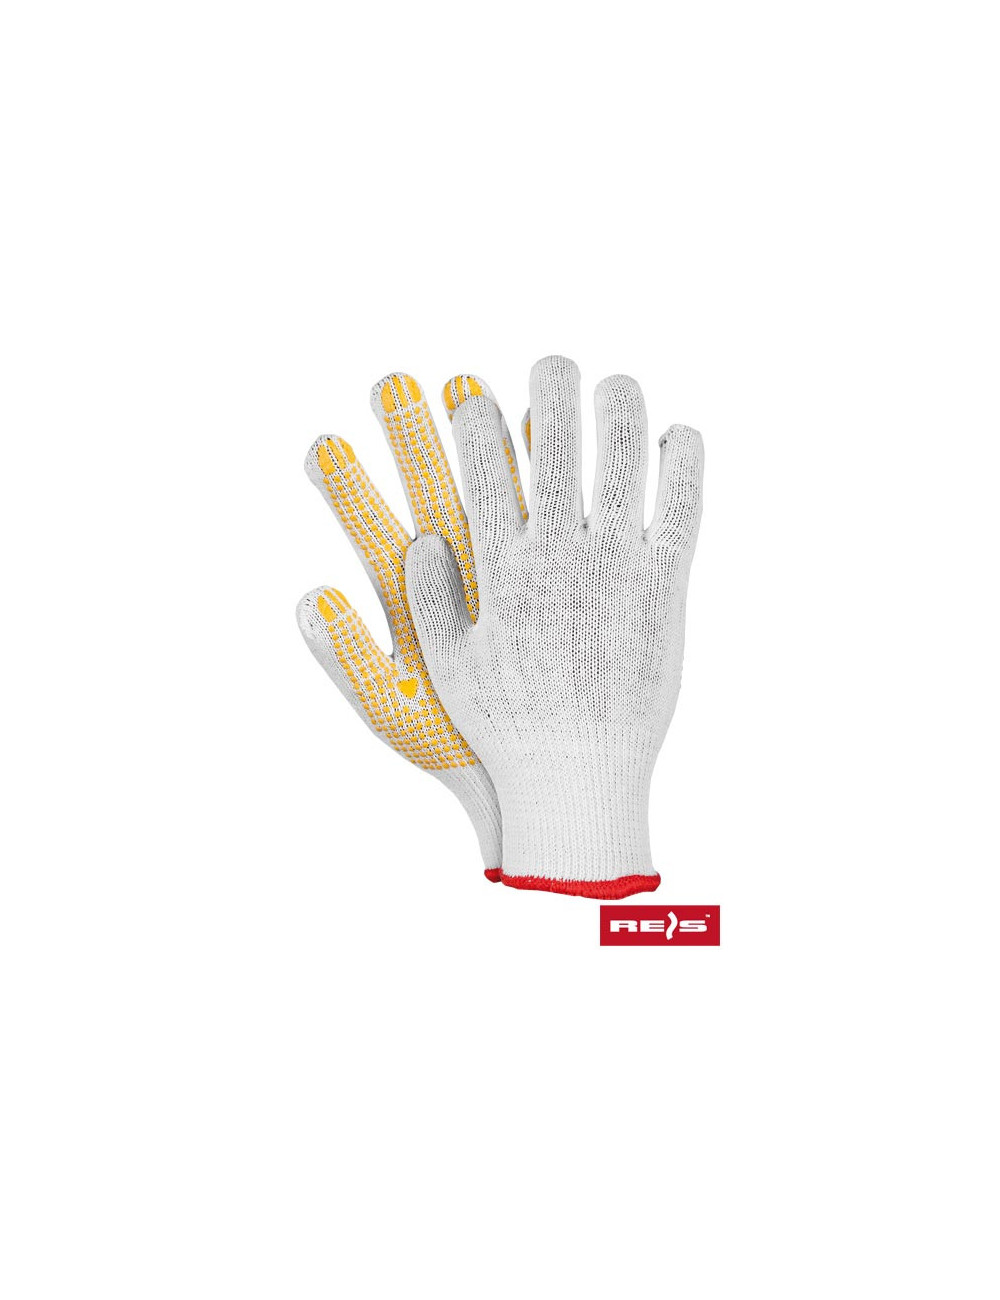 Protective gloves rdzn wy white-yellow Reis